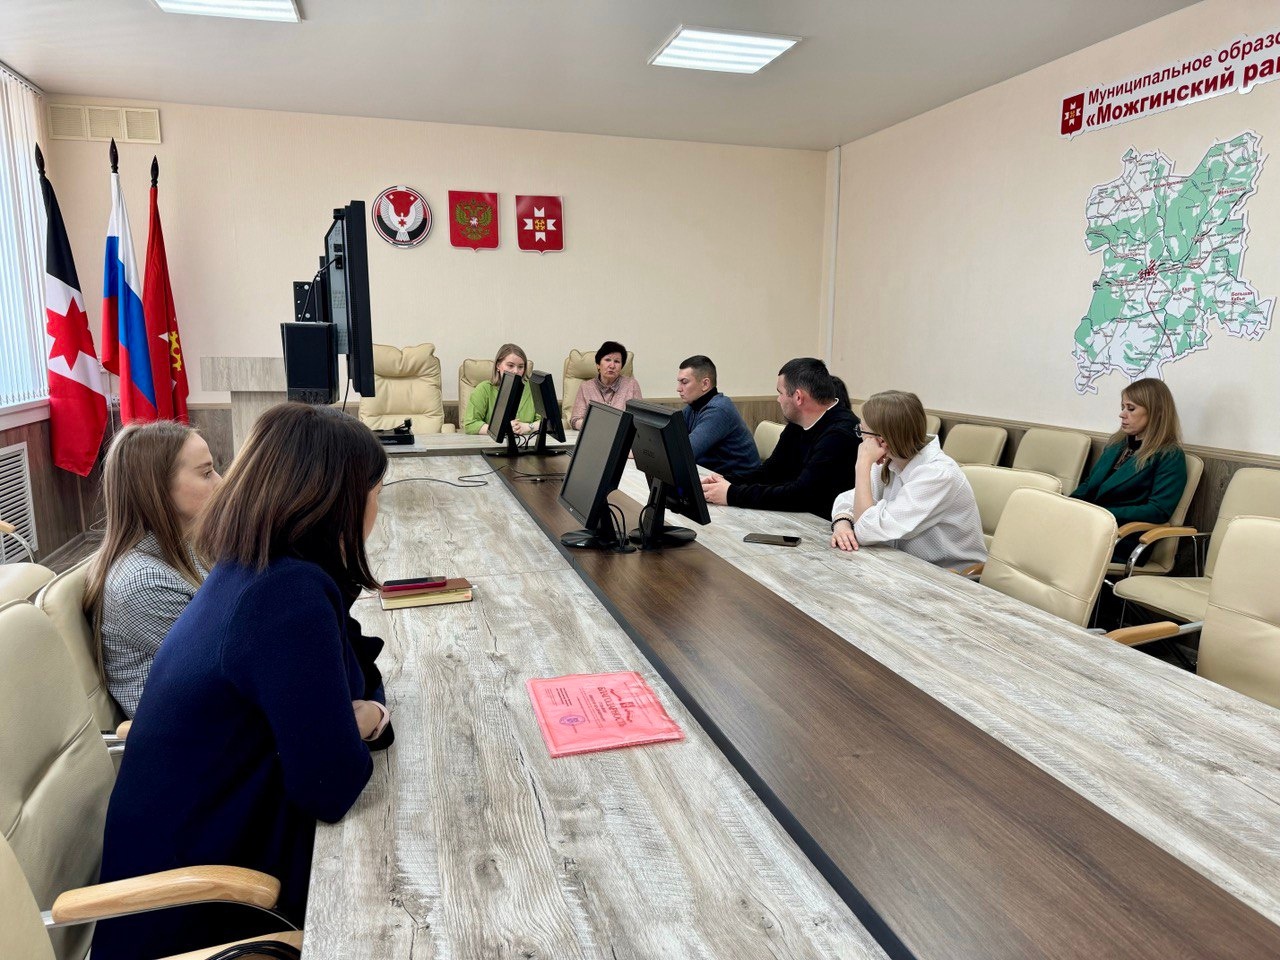 Члены Молодежного парламента Можгинского района приняли участие в совещании по вопросу развития молодежного парламентаризма в муниципальных образованиях Удмуртской Республики.